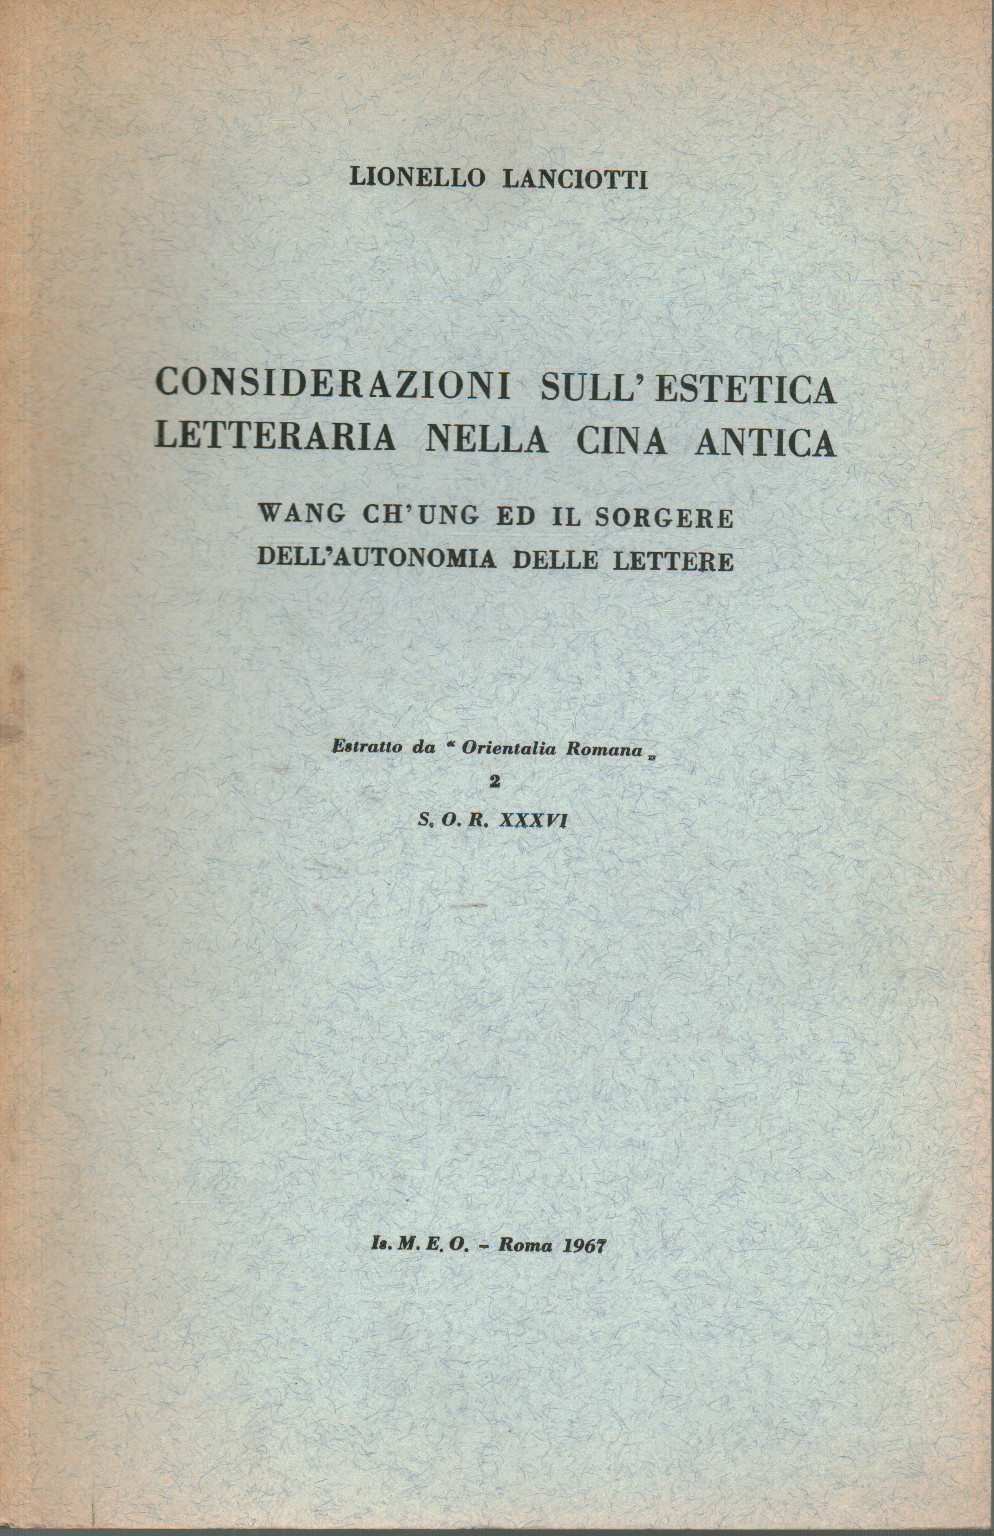 Überlegungen zur literarischen Ästhetik bei Cin, Lionello Lanciotti